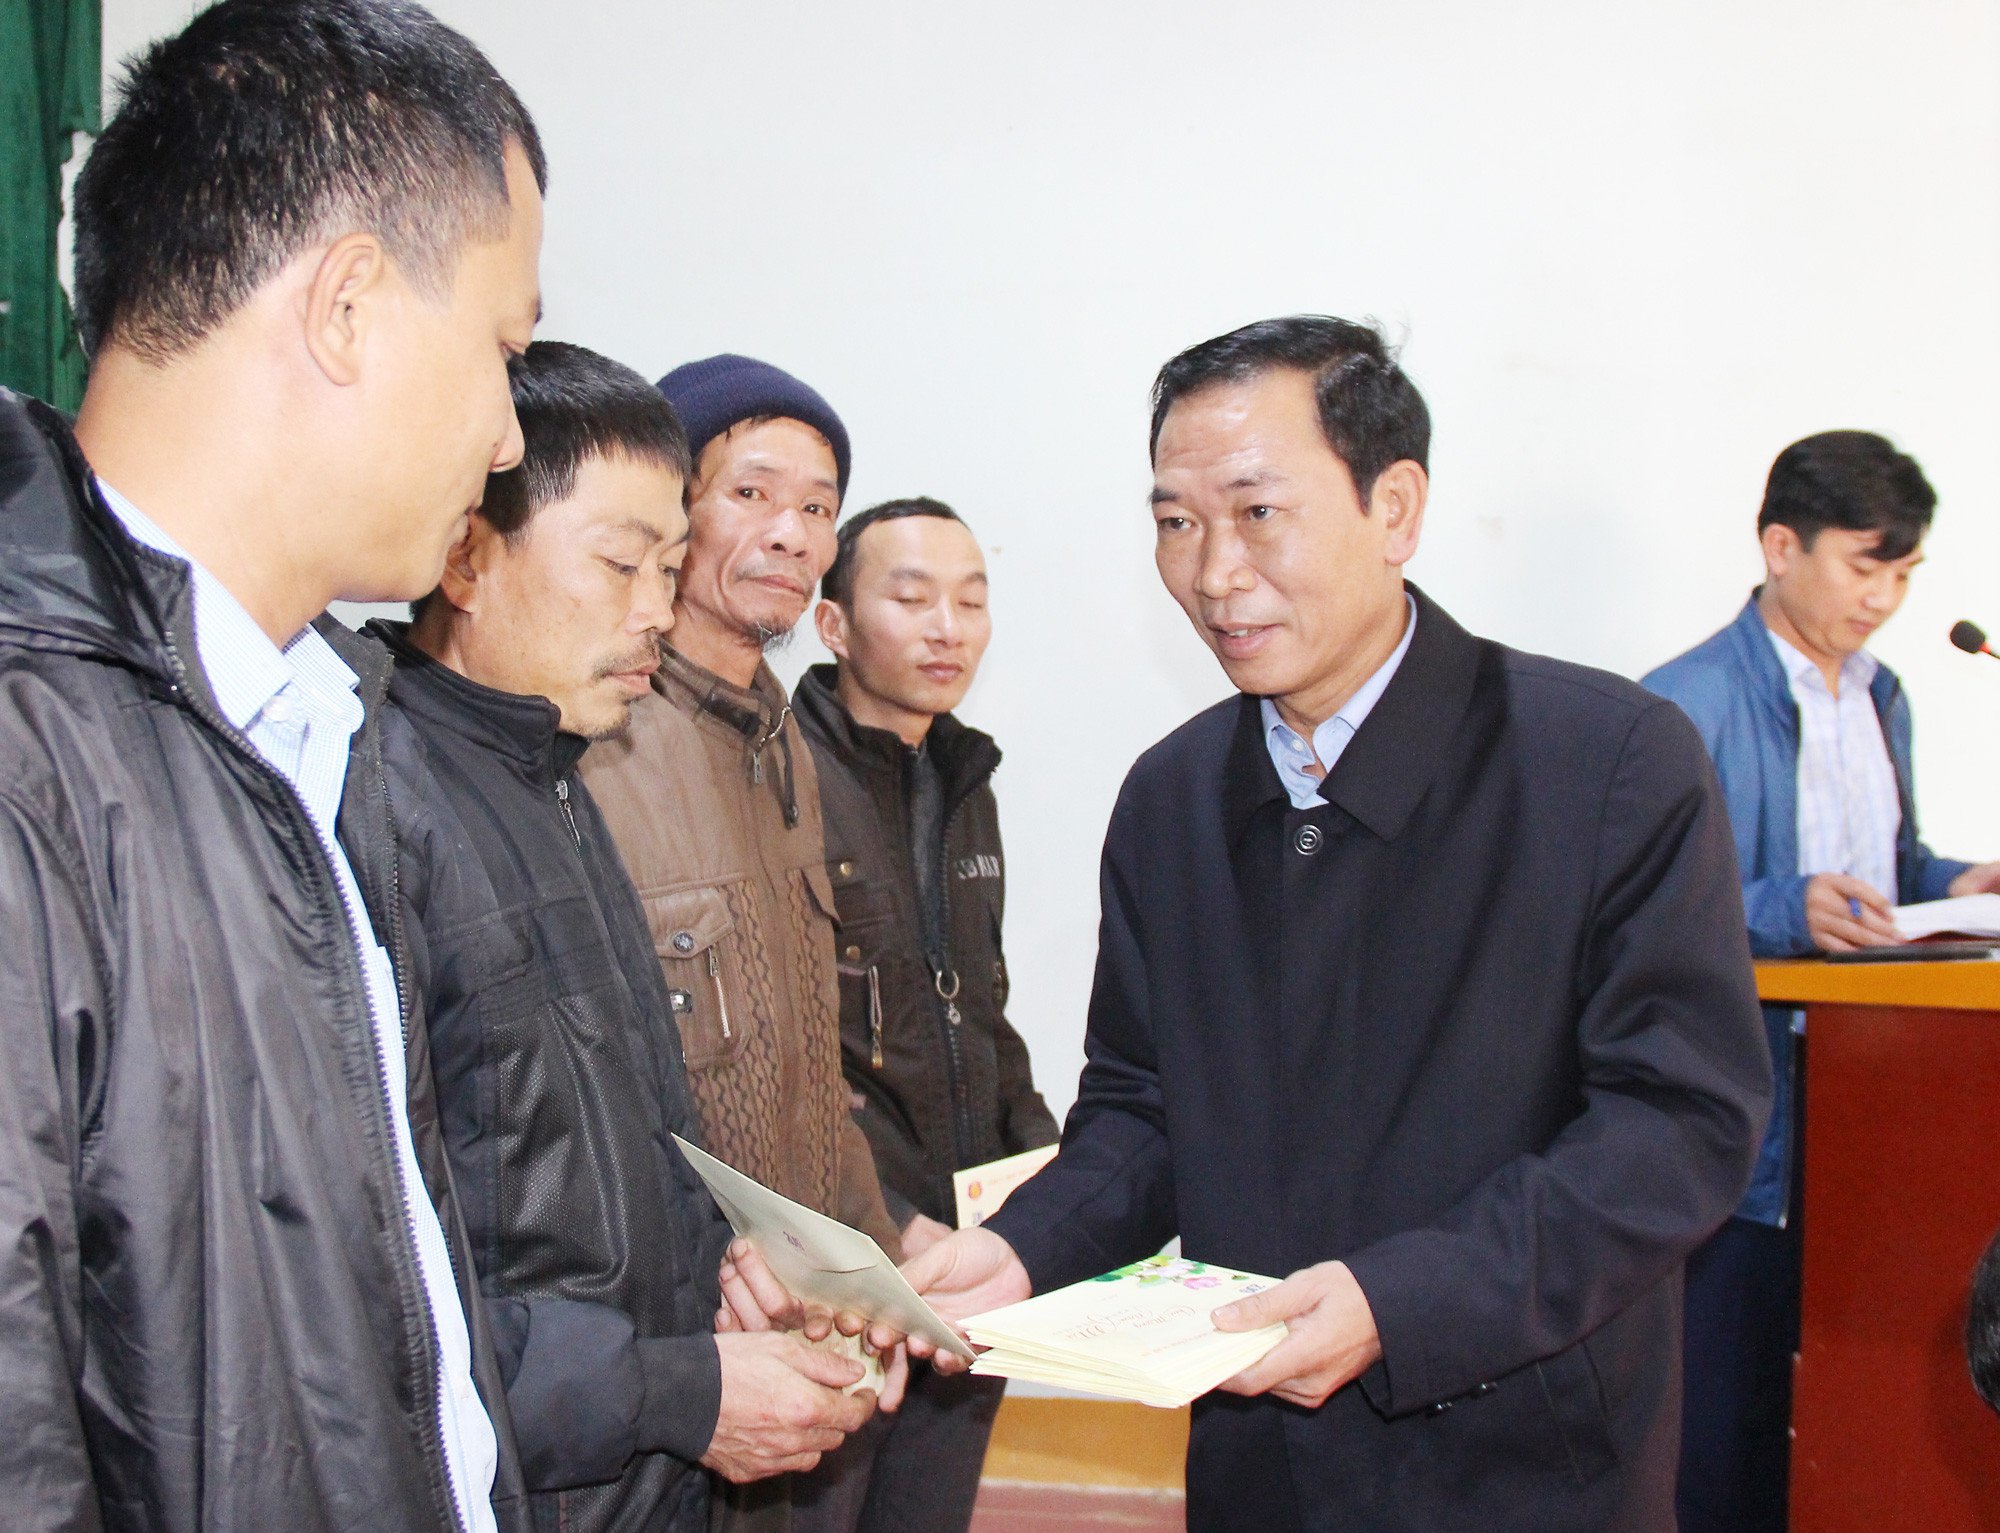 Đồng chí Nguyễn Xuân Hải - Ủy viên Ban Chấp hành Đảng bộ tỉnh, Giám đốc Sở Tài chính tặng quà tết cho các gia đình chính sách, hộ nghèo. Ảnh: Mai Hoa